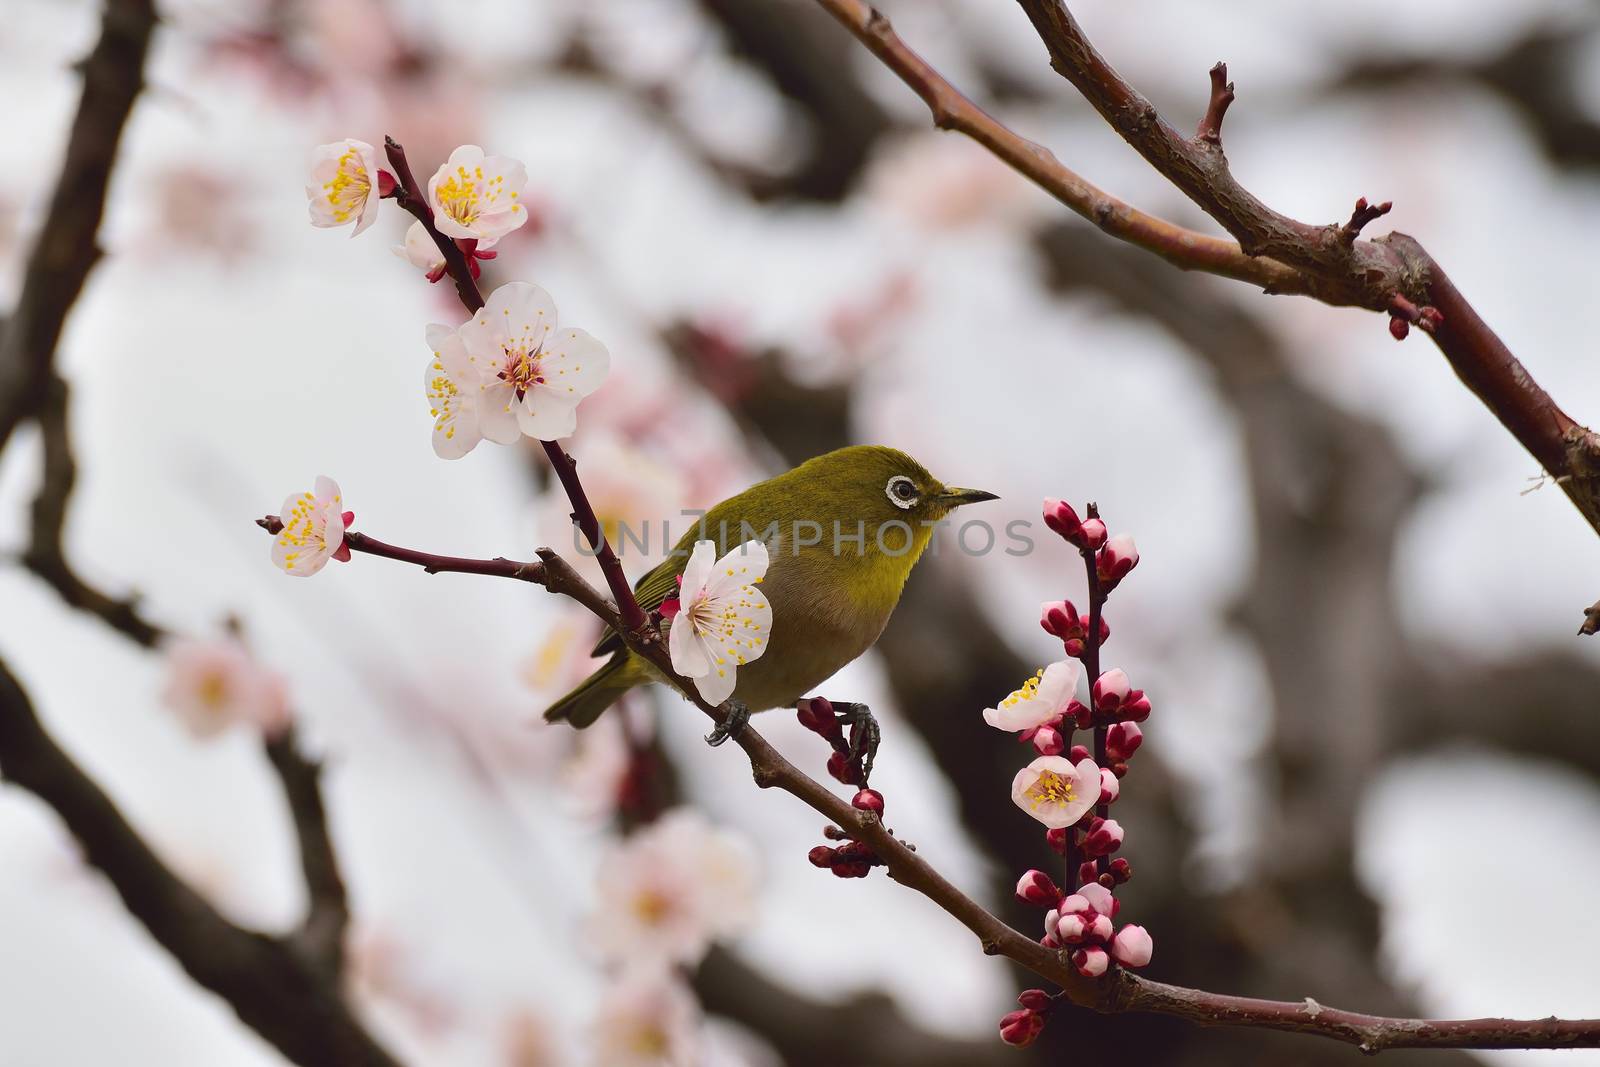 Japanese Whiye Eye Bird on white Plum blossom tree in horizontal frame